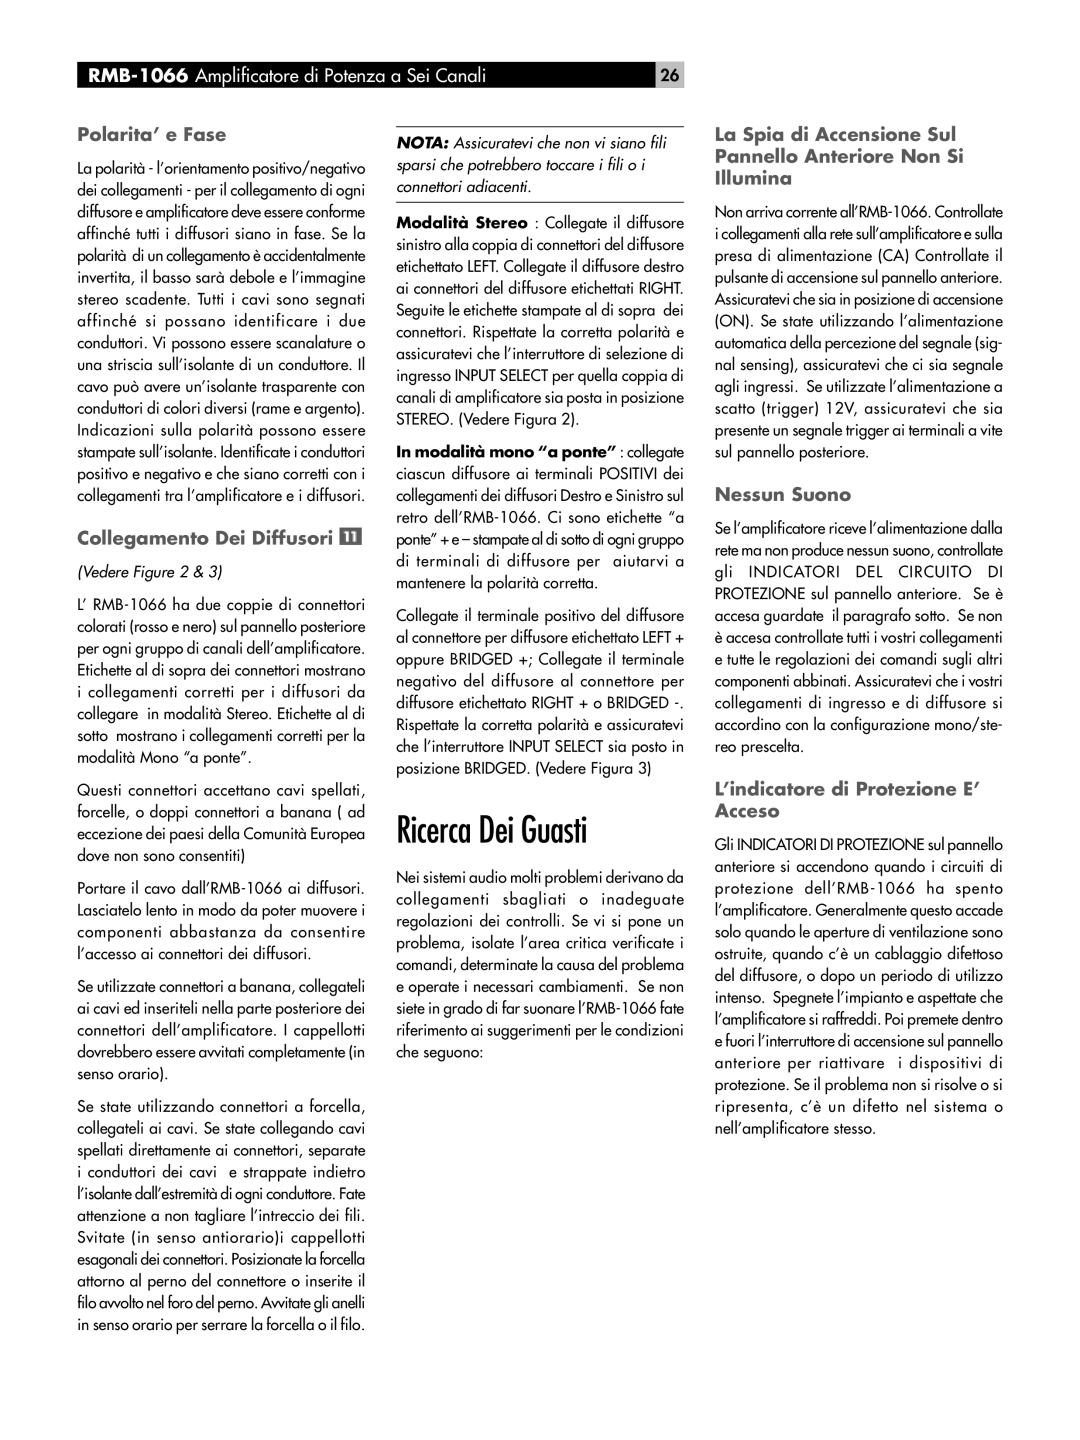 Rotel RMB-1066 owner manual Ricerca Dei Guasti, Polarita’ e Fase, Collegamento Dei Diffusori, Nessun Suono, Vedere Figure 